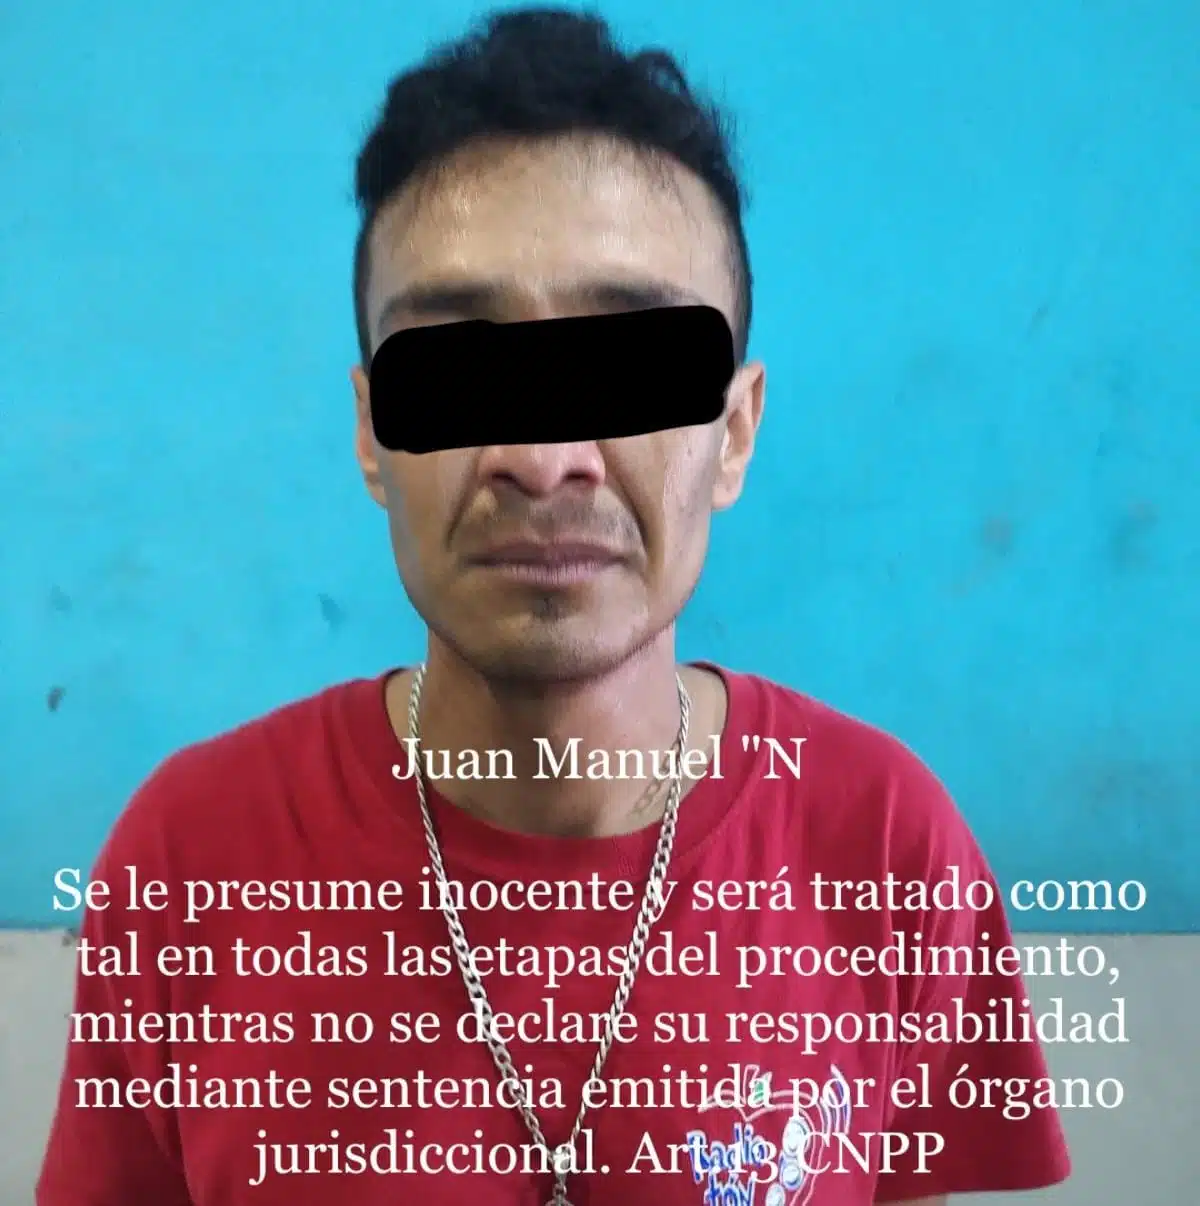 Juan Manuel fue detenido por presuntamente intentar agredir a su tía con un arma blanca